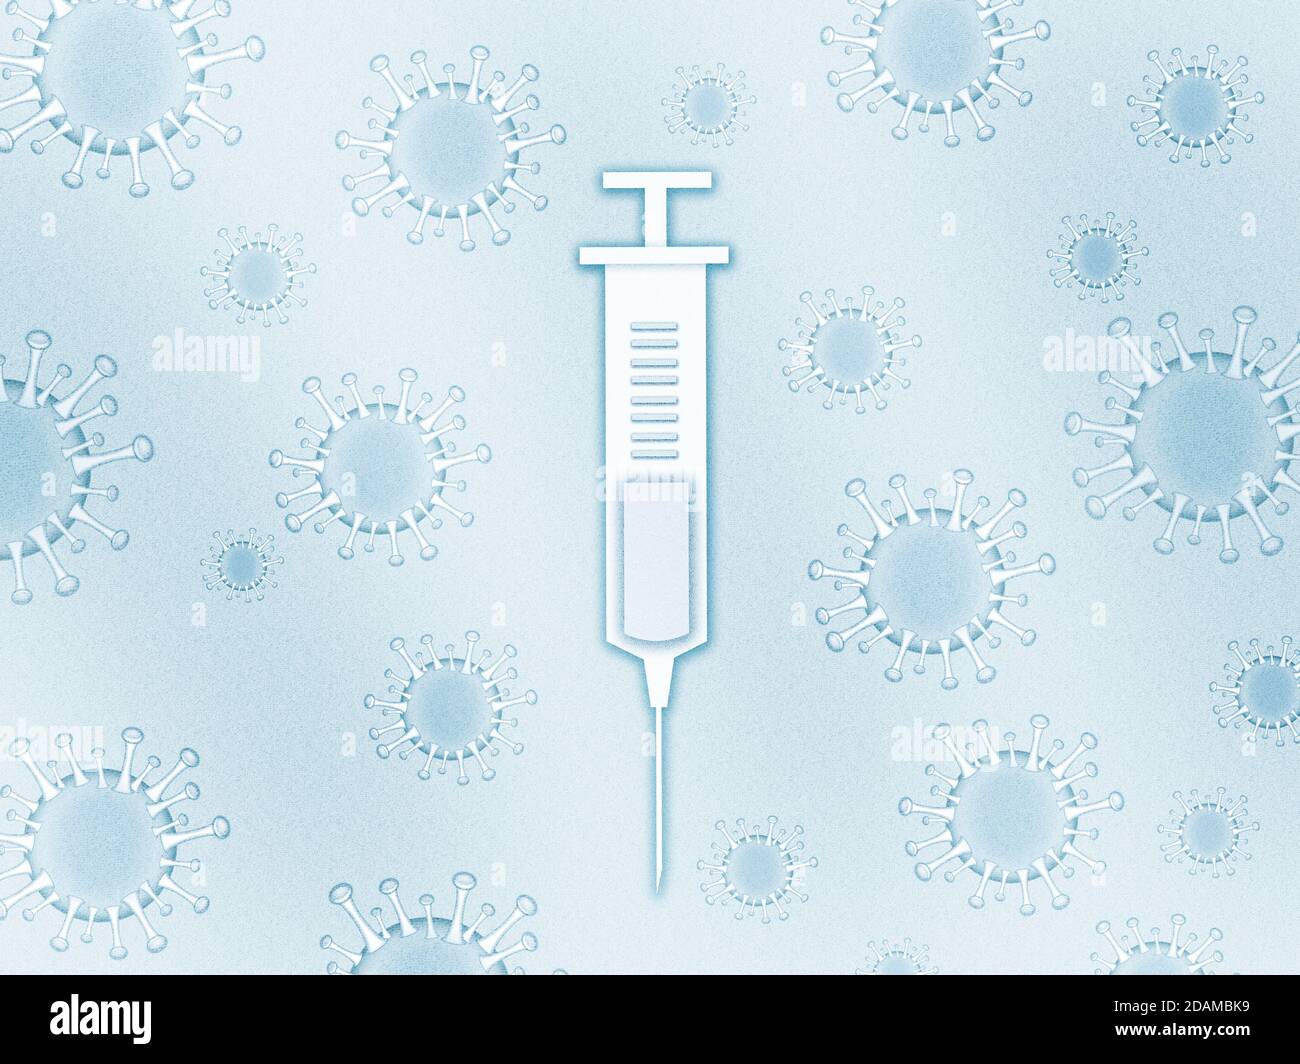 Syringe surrounded by covid-19 viruses, illustration. Stock Photo